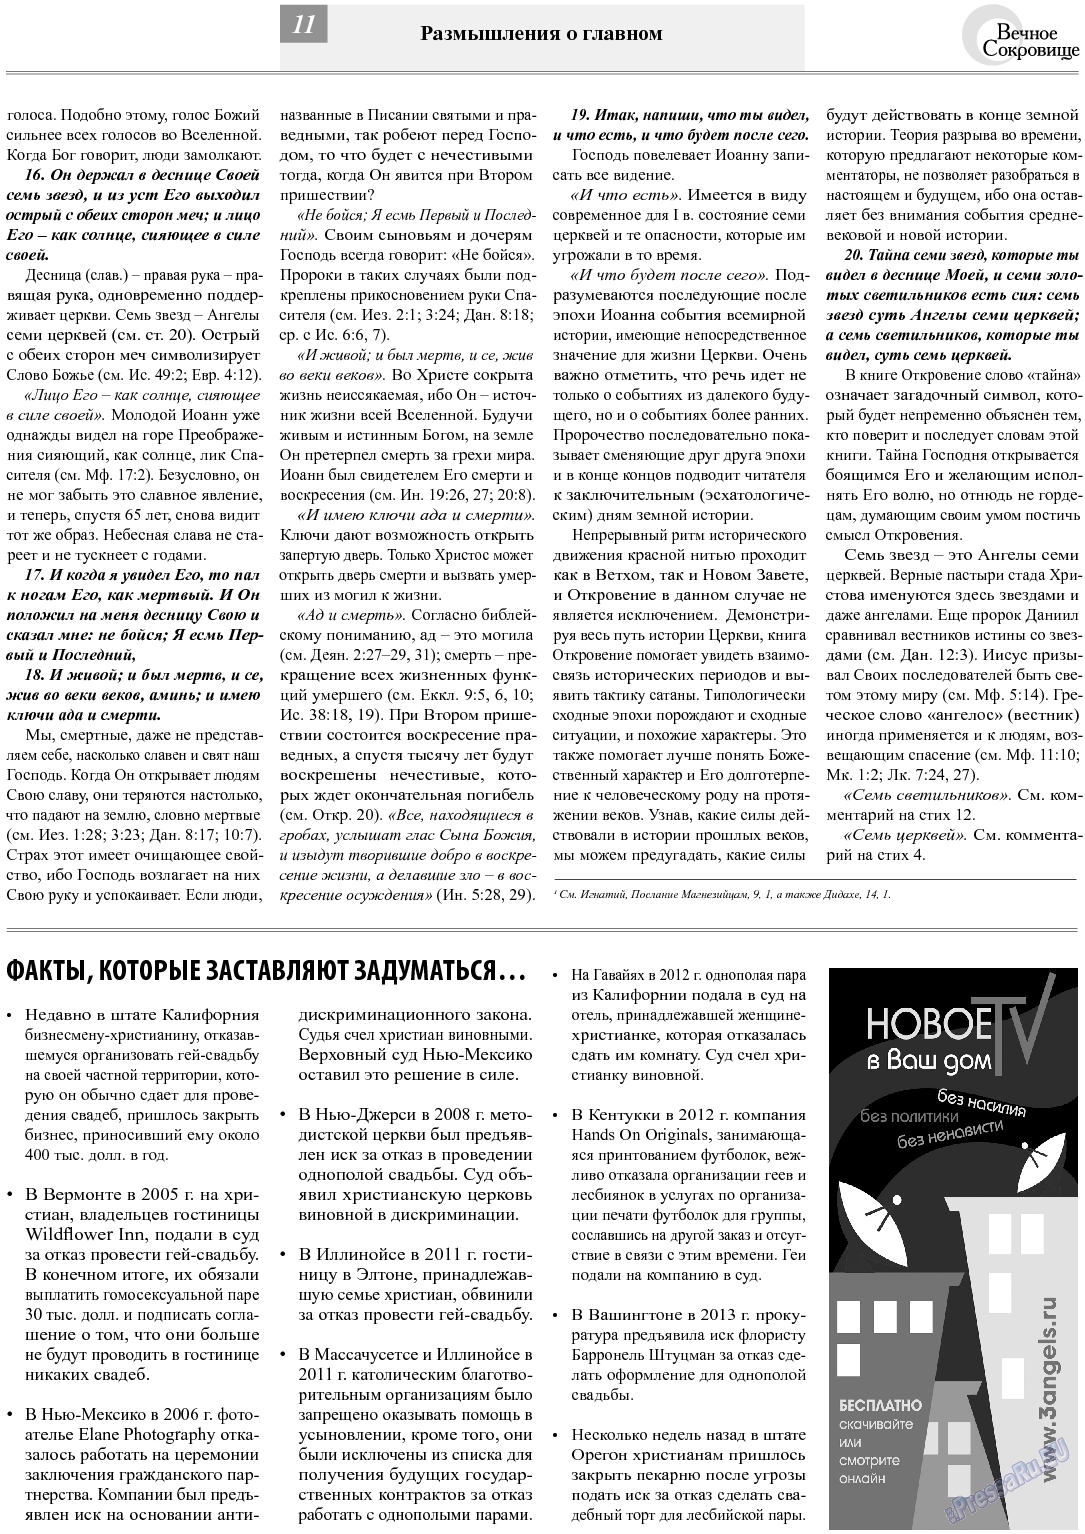 Вечное сокровище, газета. 2013 №6 стр.11